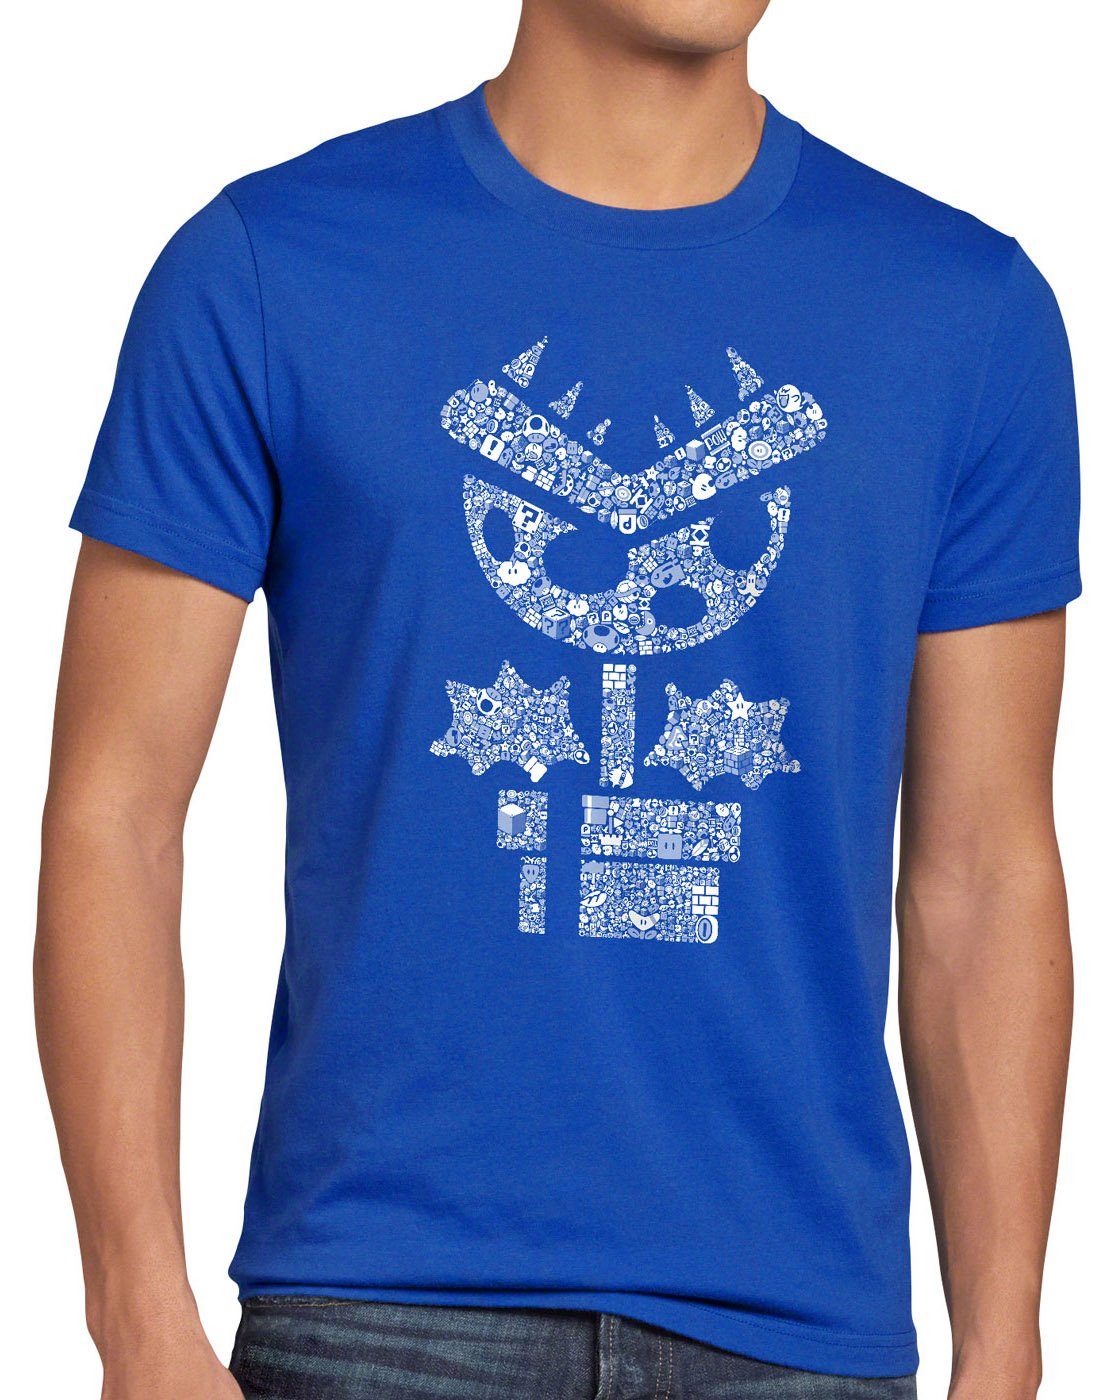 boy T-Shirt style3 nes blau Print-Shirt gamer Super videospiel snes mario world wii game Piranha Herren